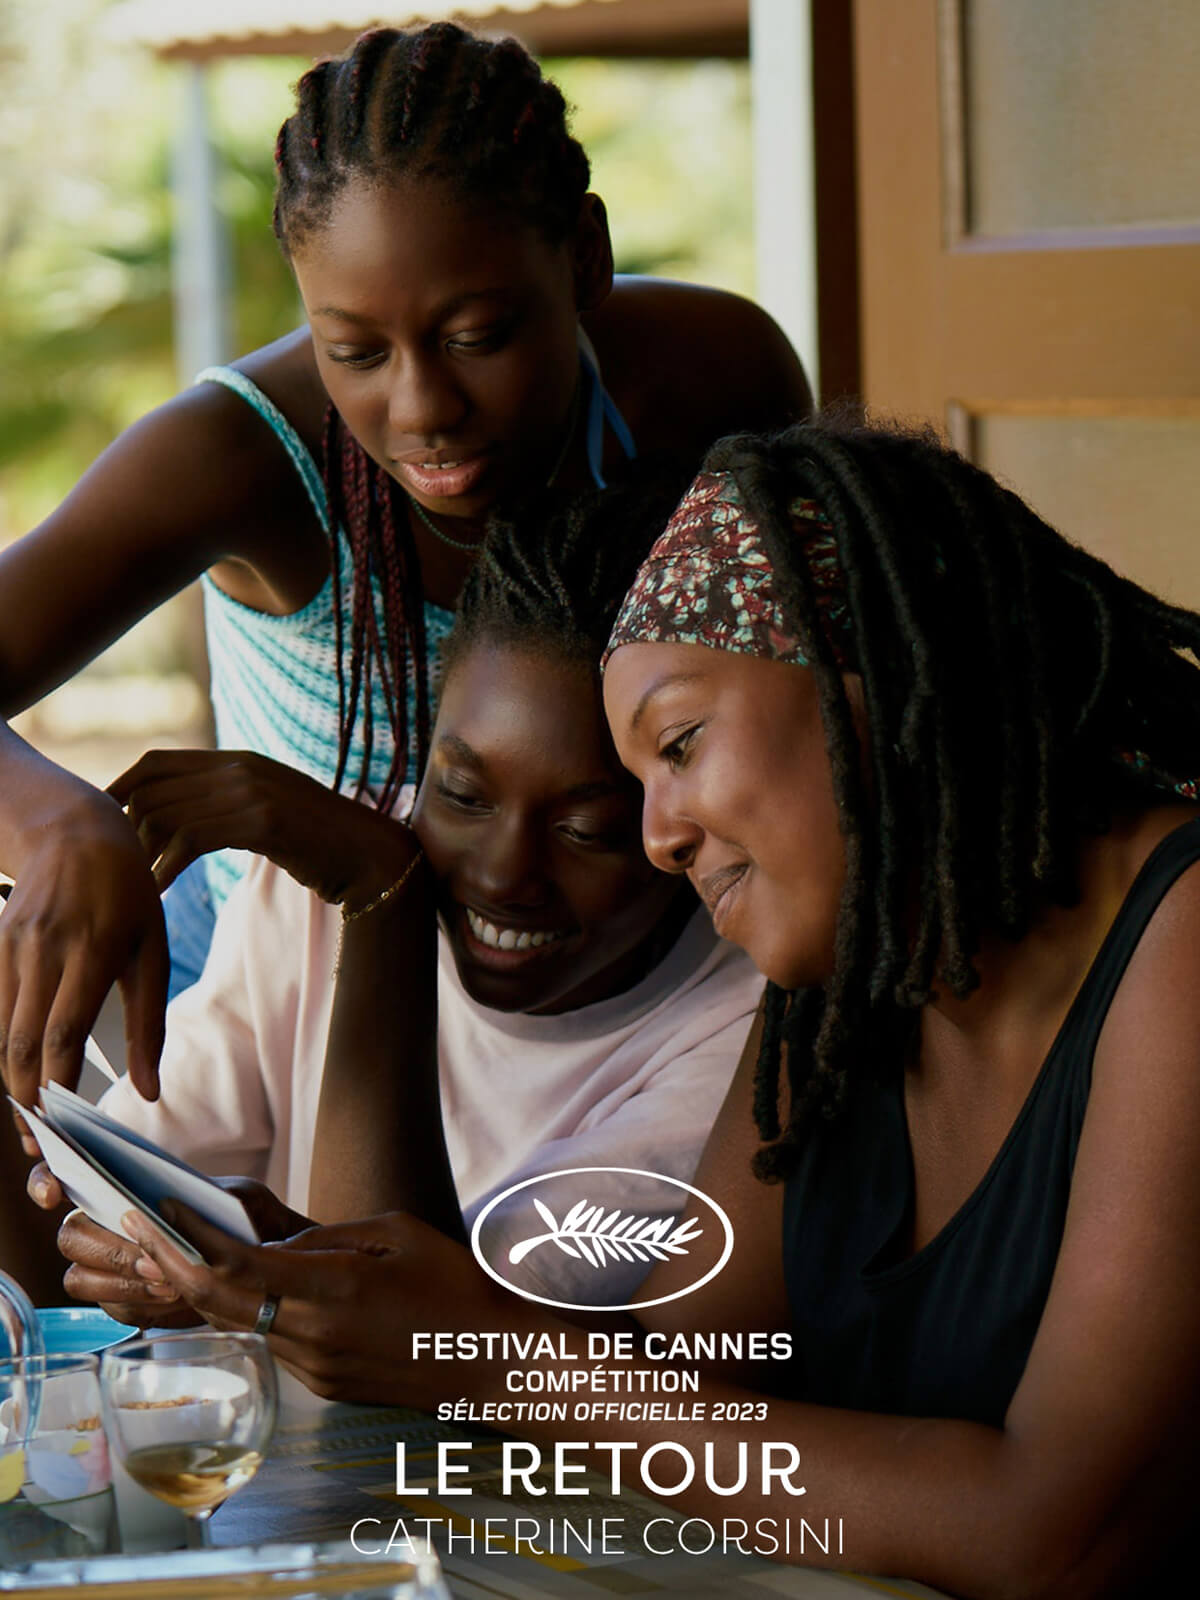 Cannes 2023, ecco tutti i film in gara per la Queer Palm - Le retour di Catherine Corsini - Gay.it